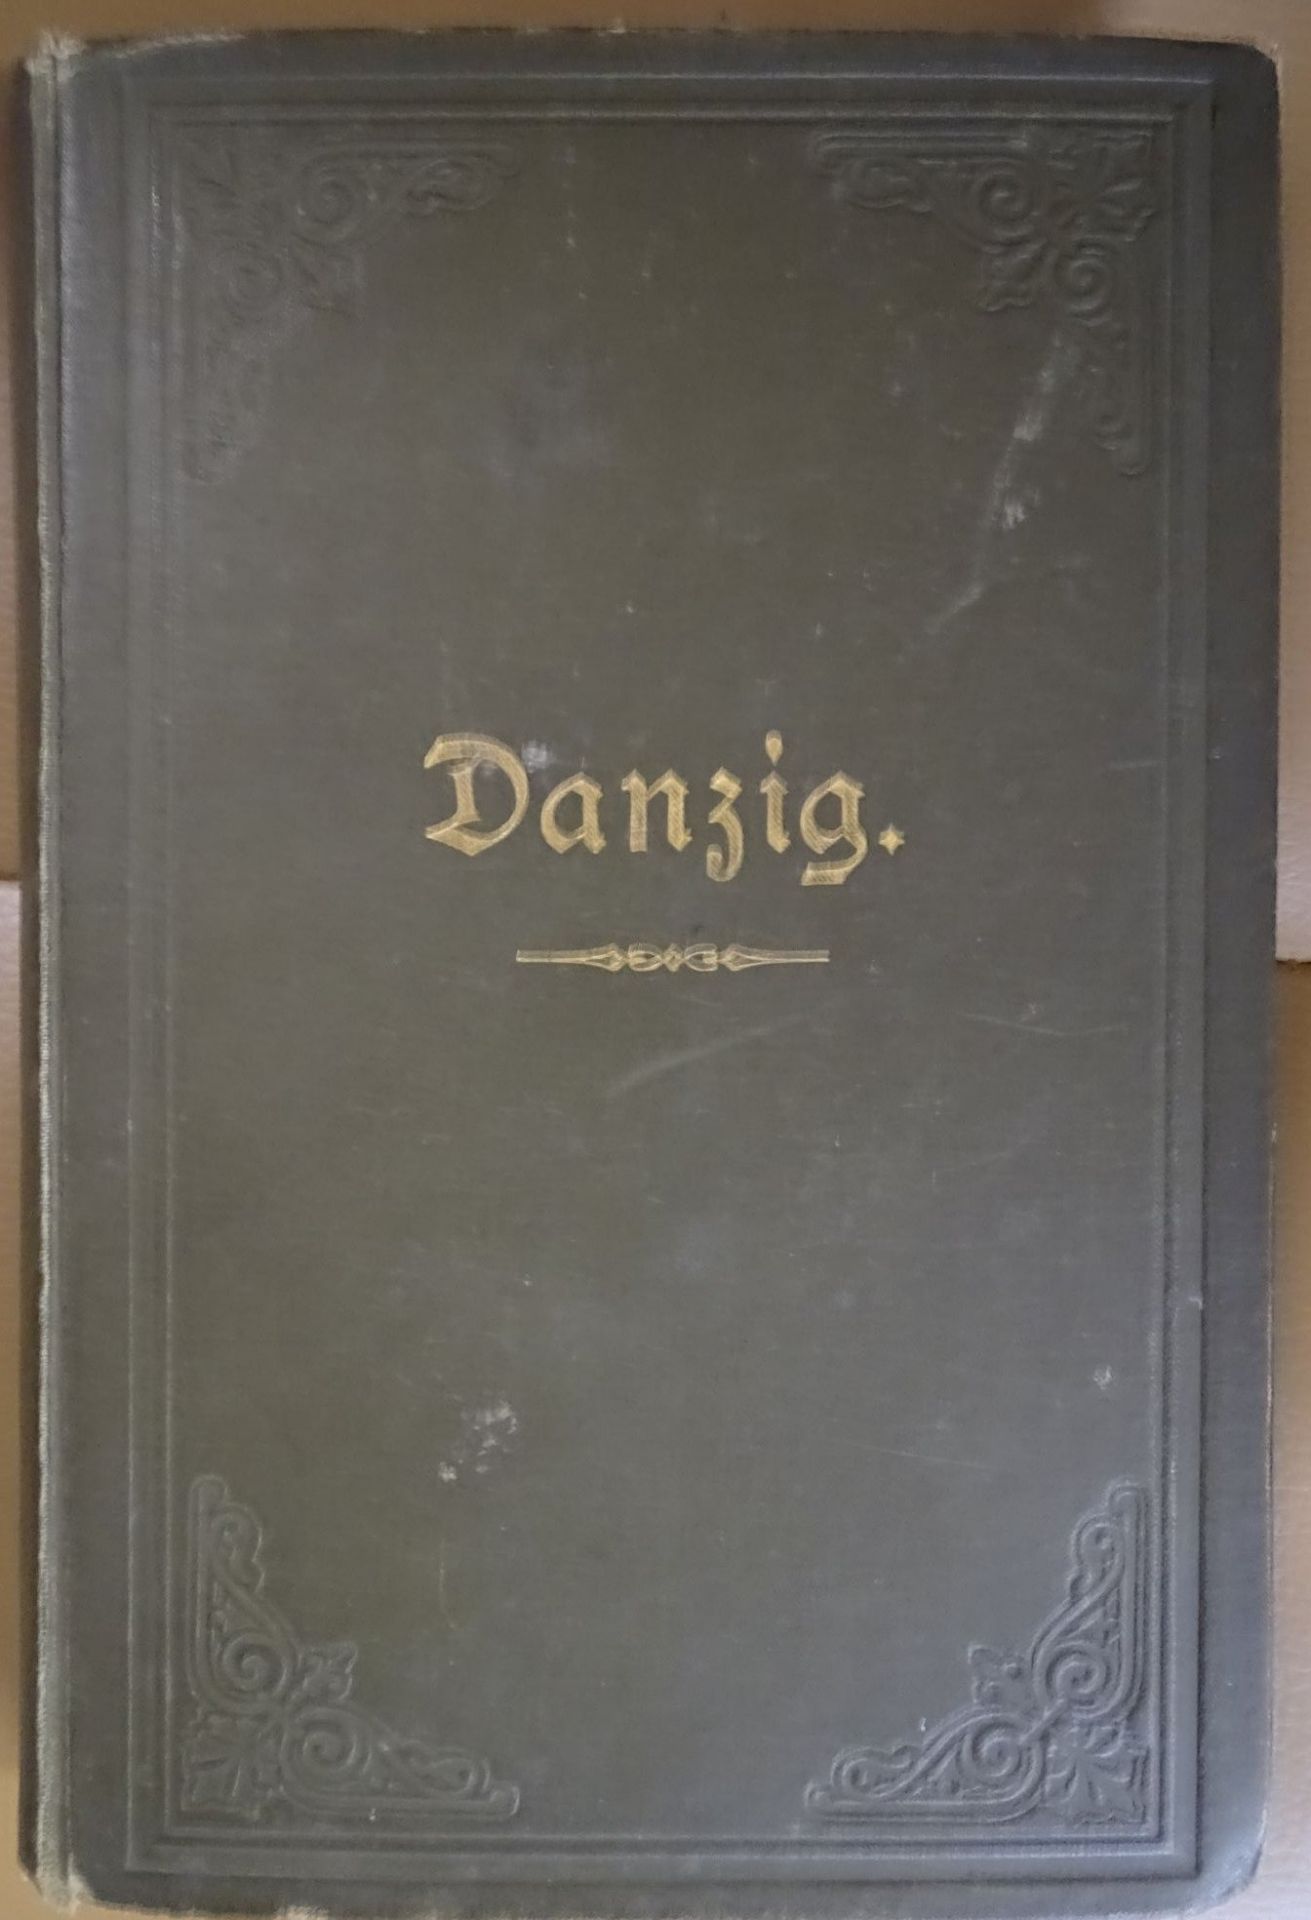 "Danzig" Geschichte der Provinz.-Hauptstadt, 1893, am Ende mit 2 Faltkarten mit Danzig-Ansichten, - Bild 2 aus 5